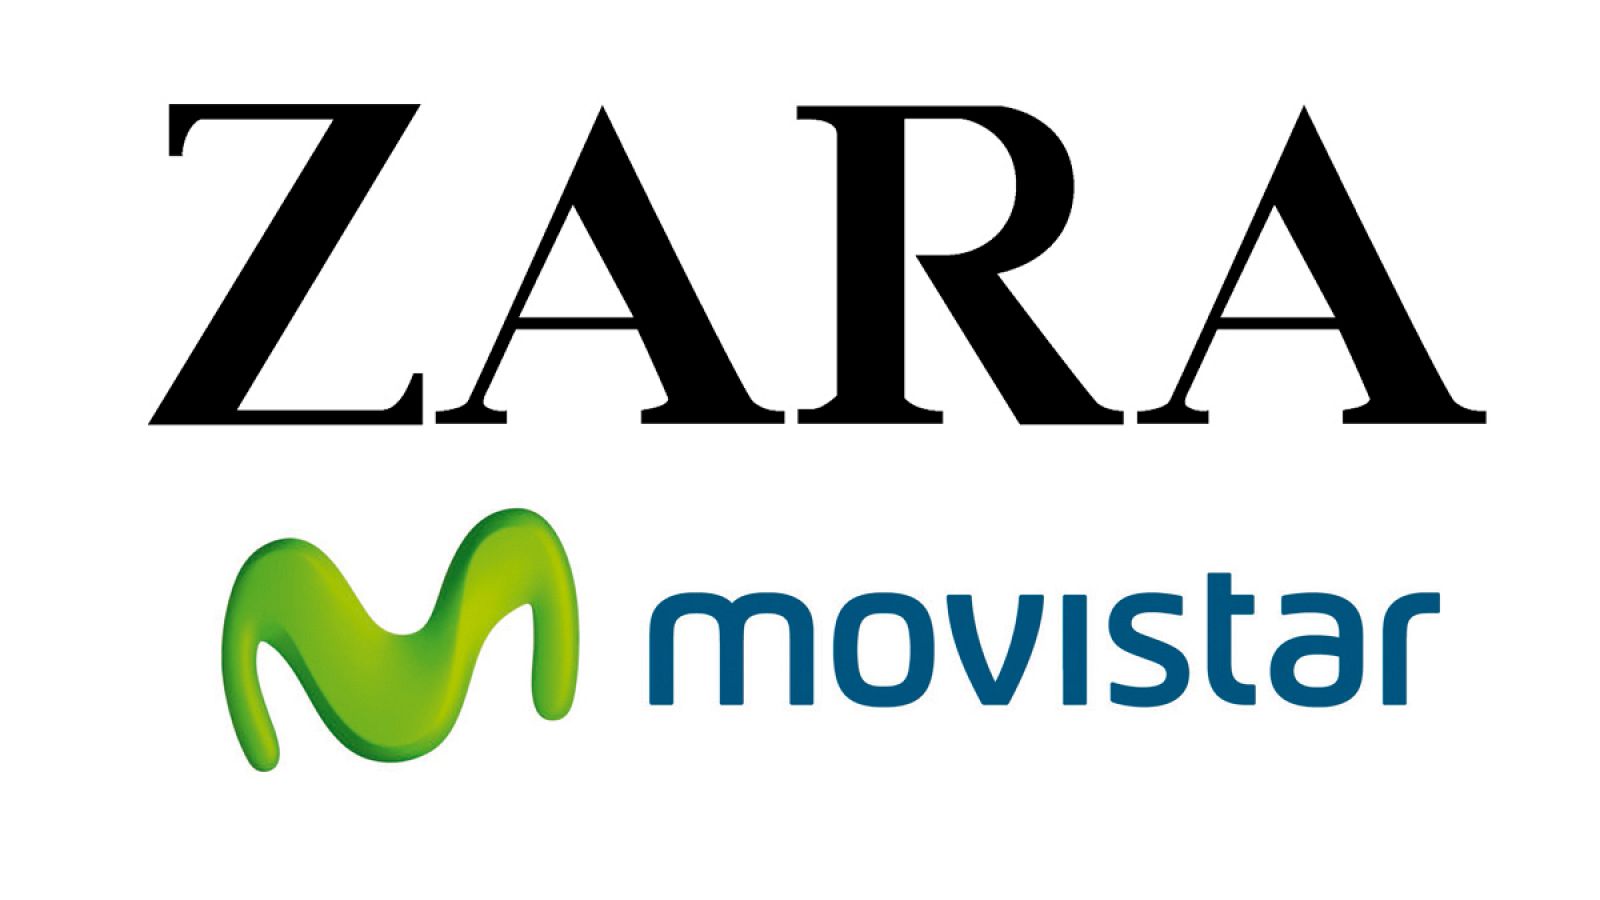 Marcas españolas en el top 100, Zara en el 42 y Movistar en el 53